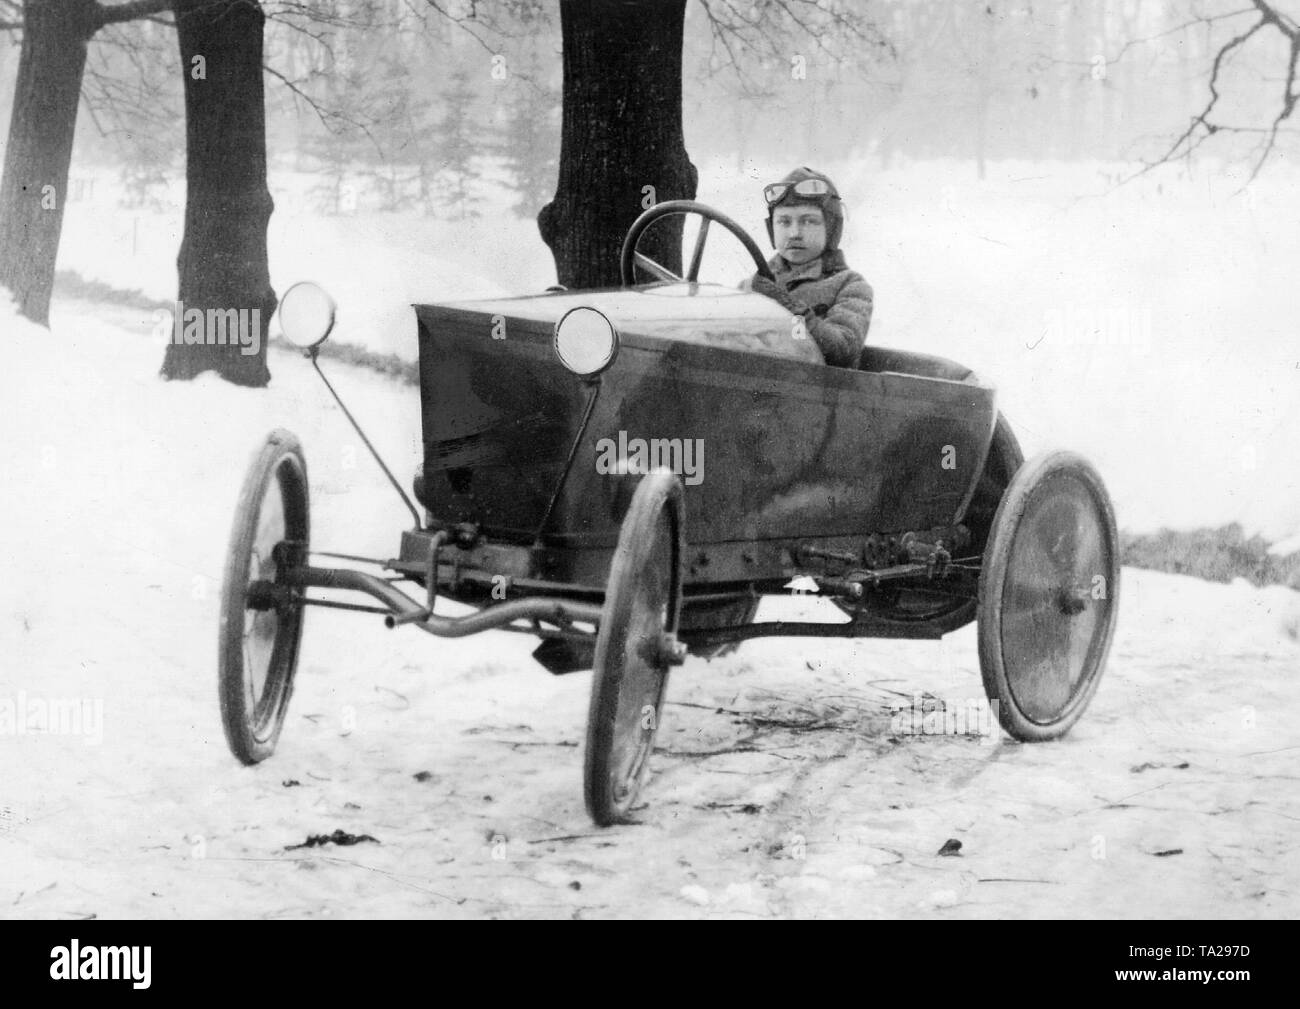 Ferry Porsche, son of Professor Ferdinand Porsche, drives his first car, an Austro-Daimler with a Feldbahn motor. The car was built on plans of Ferdinand Porsche who gave it to his son as a Christmas gift in 1921. Stock Photo